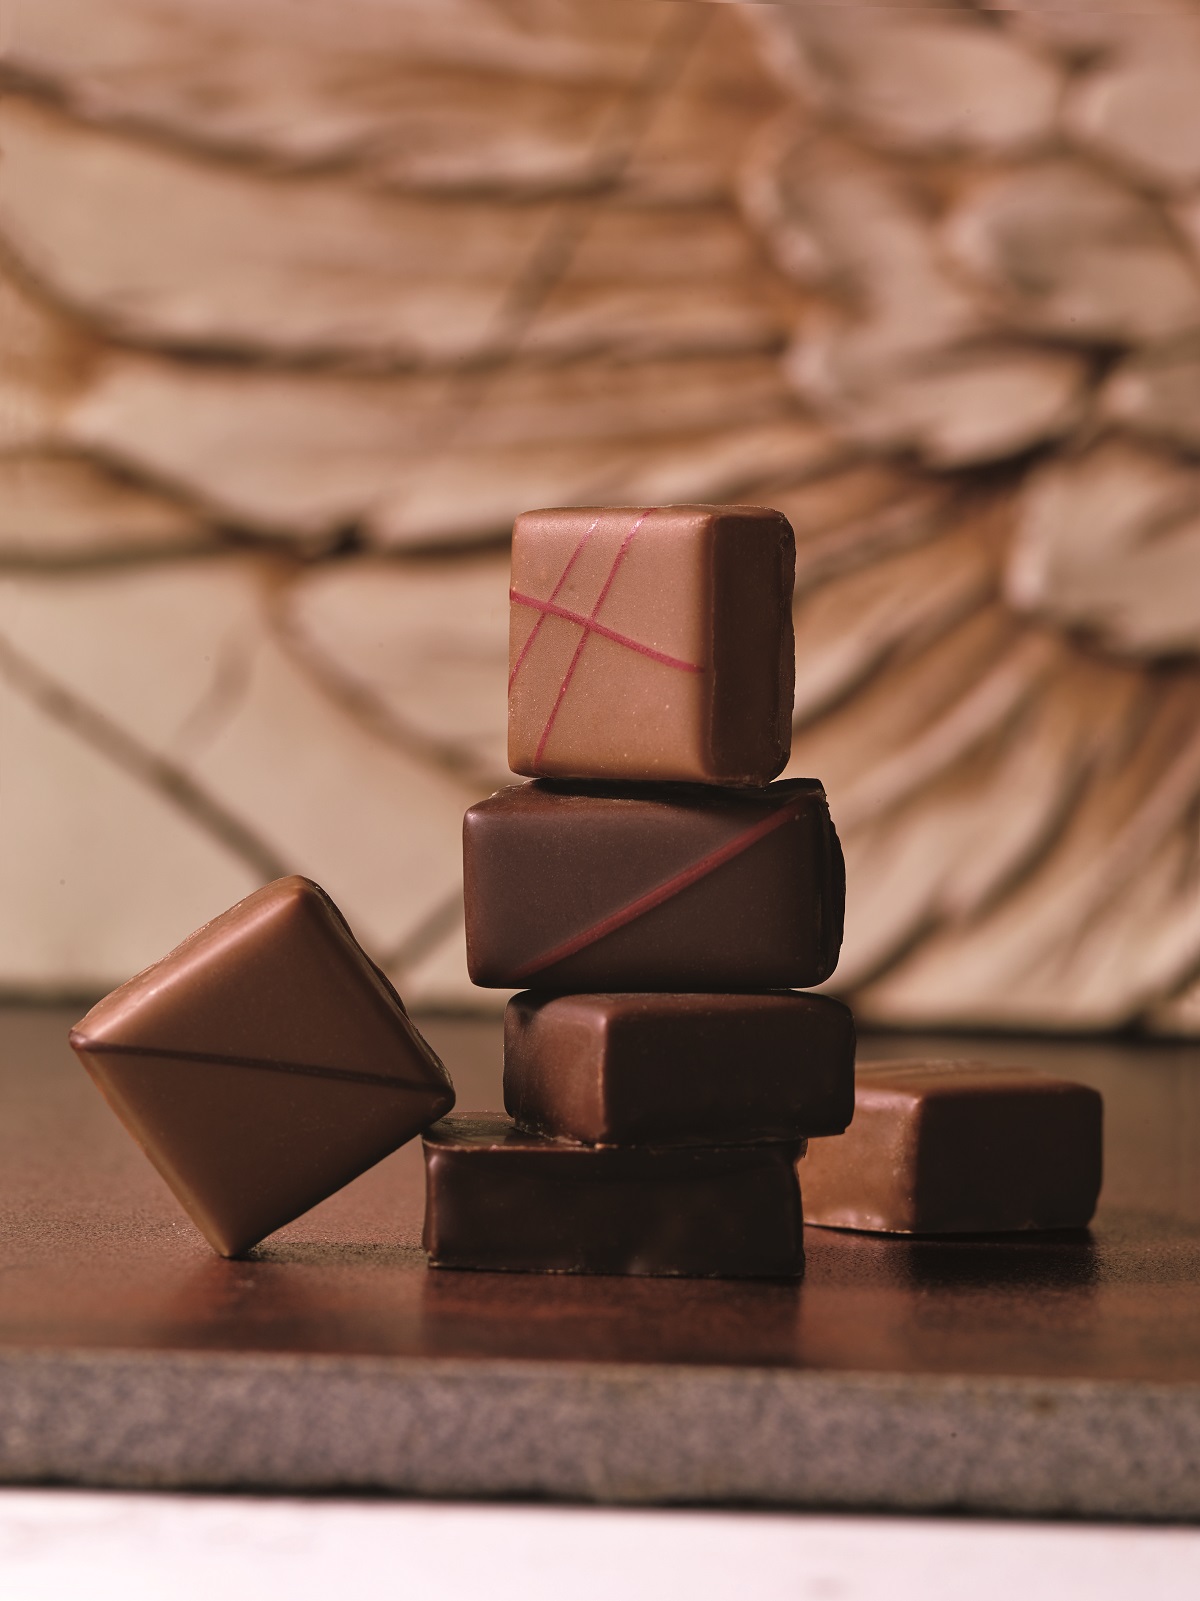 西武池袋本店 約1ブランドのチョコレート集結 チョコレートパラダイス19 開催 ココシル池袋